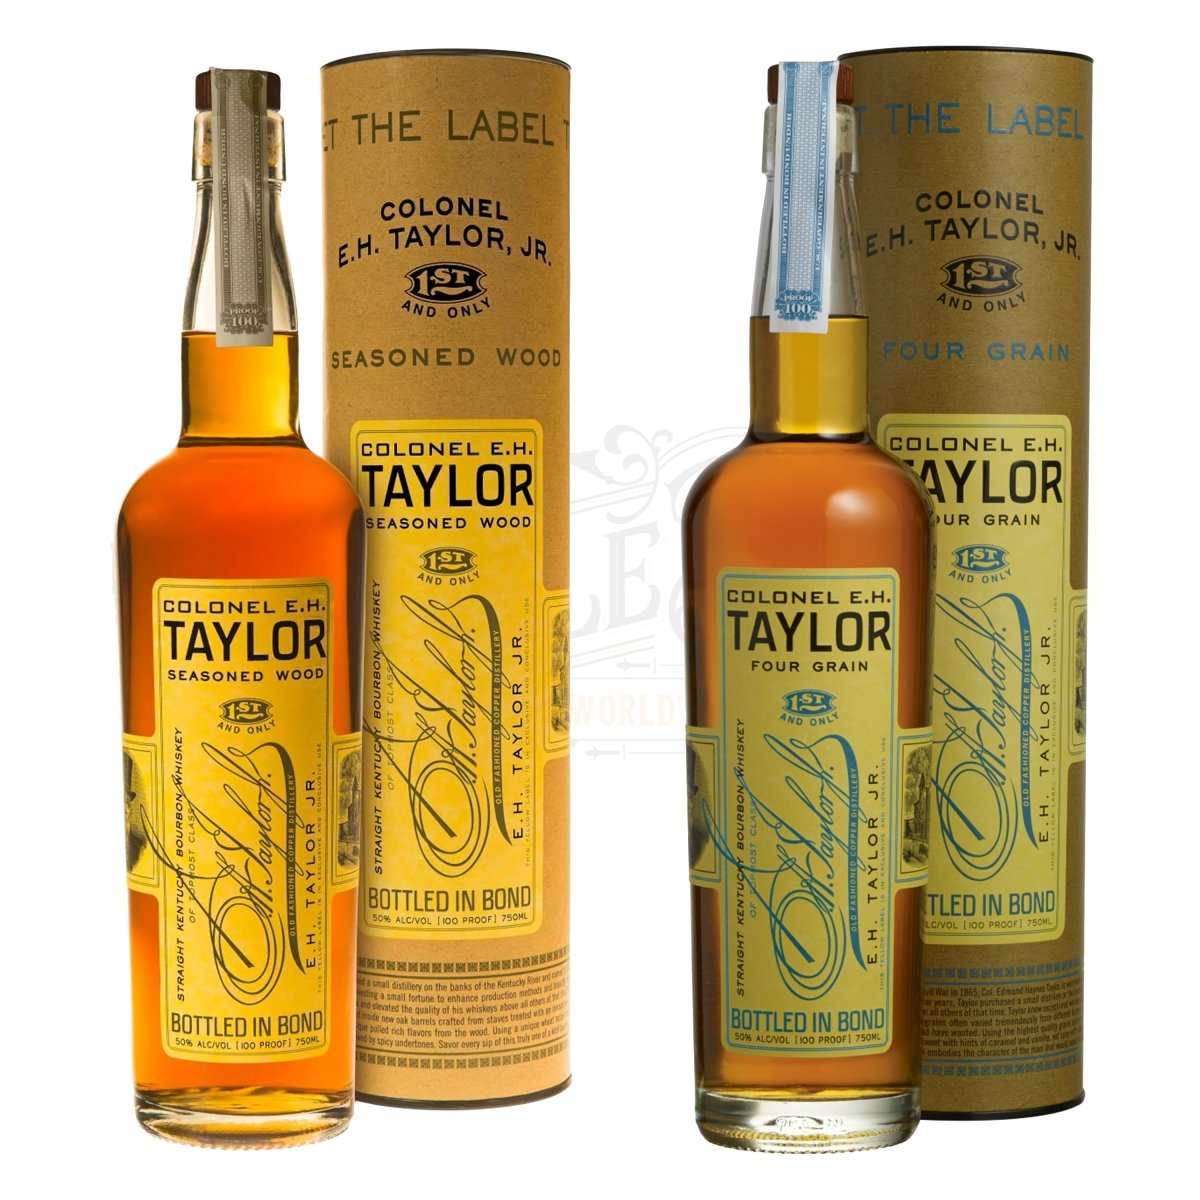 E.H. Taylor Seasoned Wood Bourbon & Four Grain Bundle